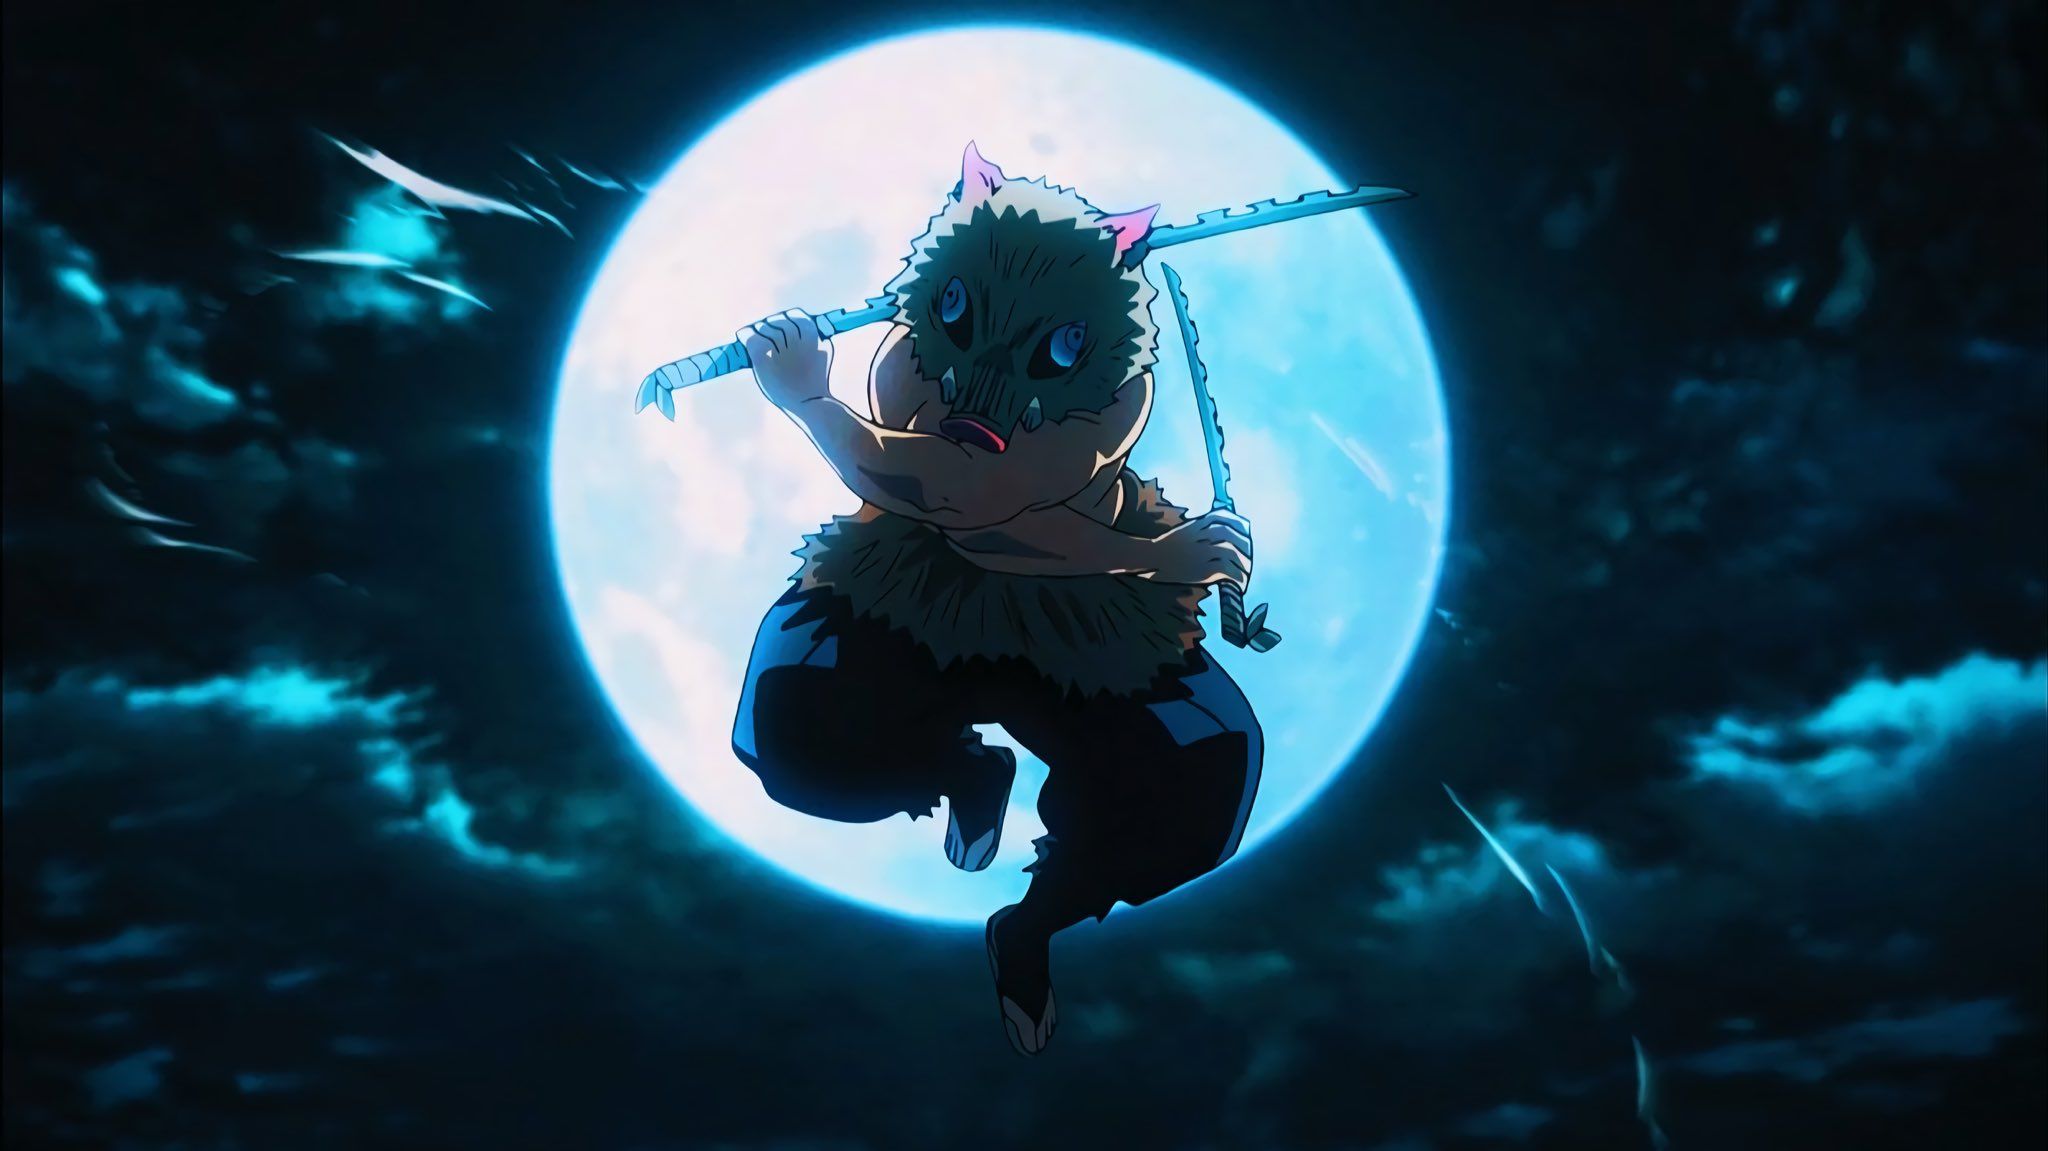 Demon Slayer on Anime demon Slayer anime Dark anime